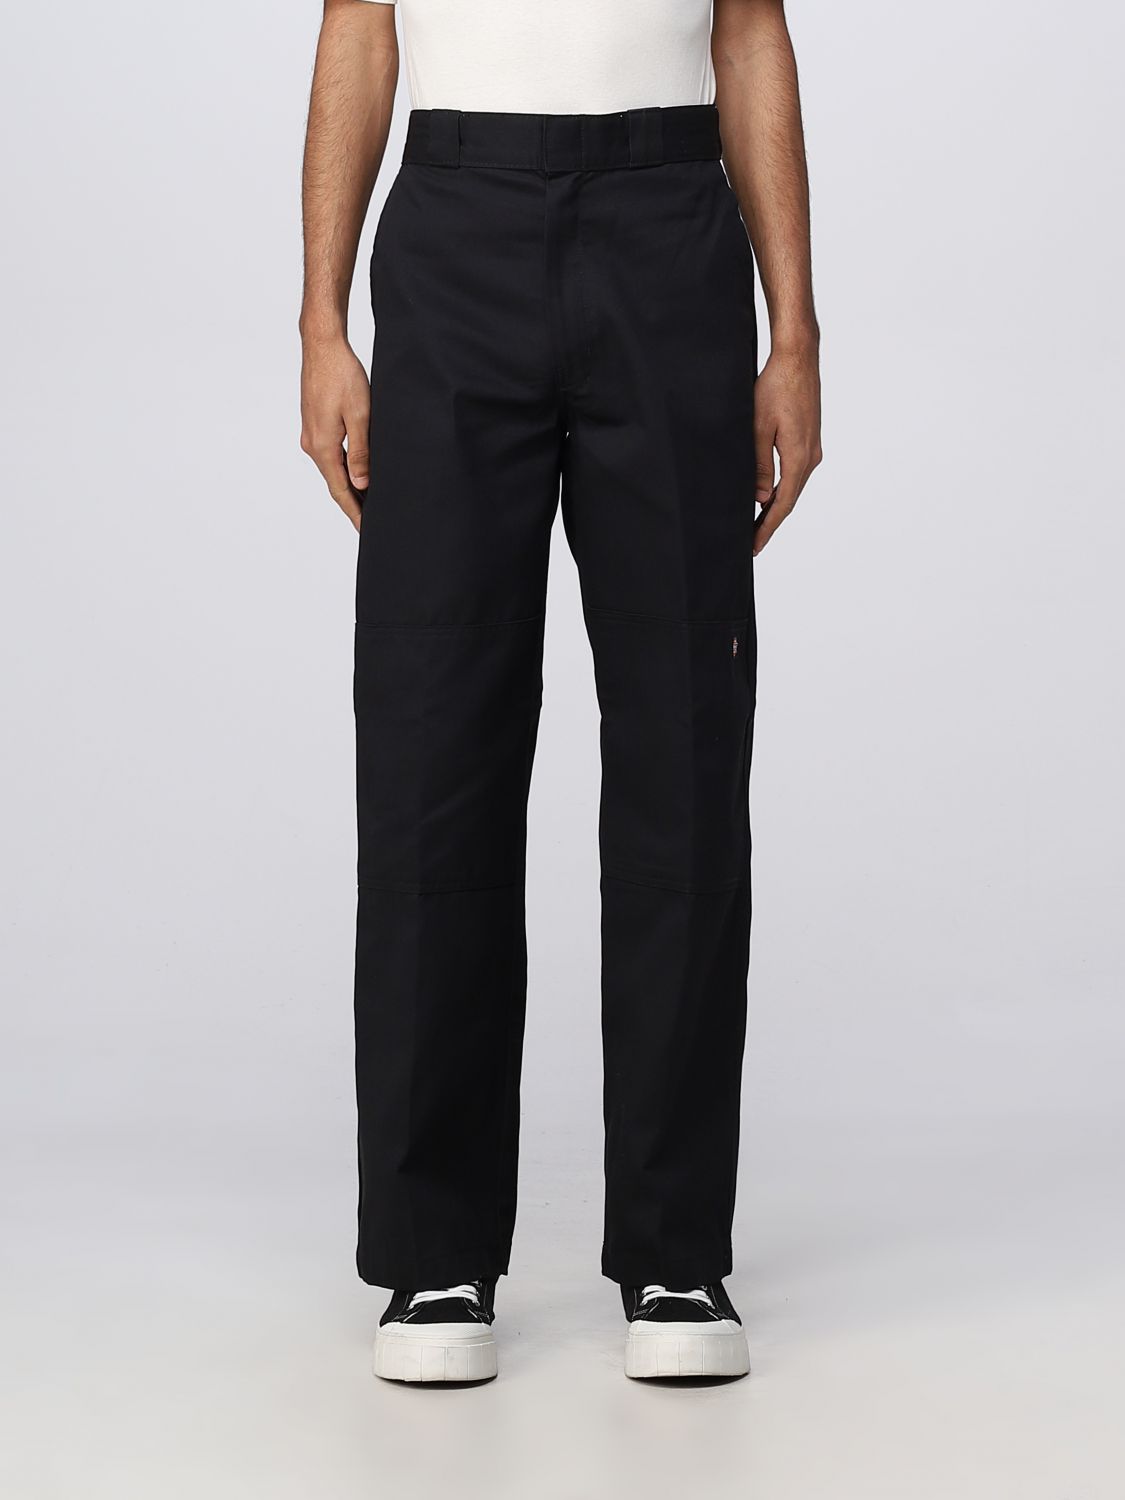 DICKIES: pants for man - Black | Dickies pants DK0A4XK3 online on ...